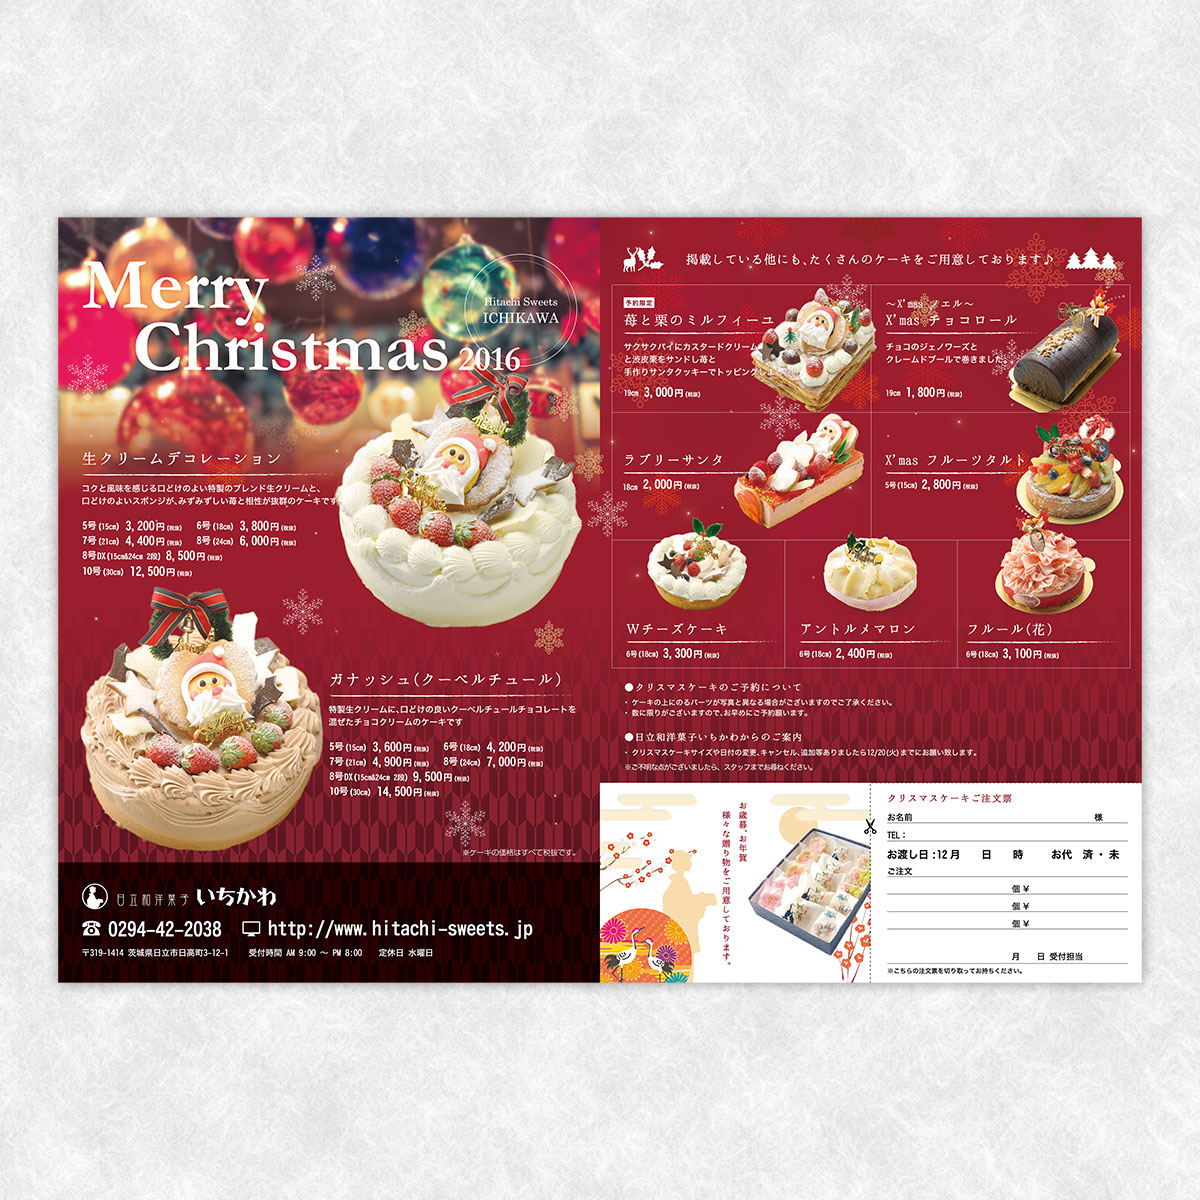 「日立和洋菓子いちかわ」様のクリスマスチラシ制作を実績紹介に追加しました